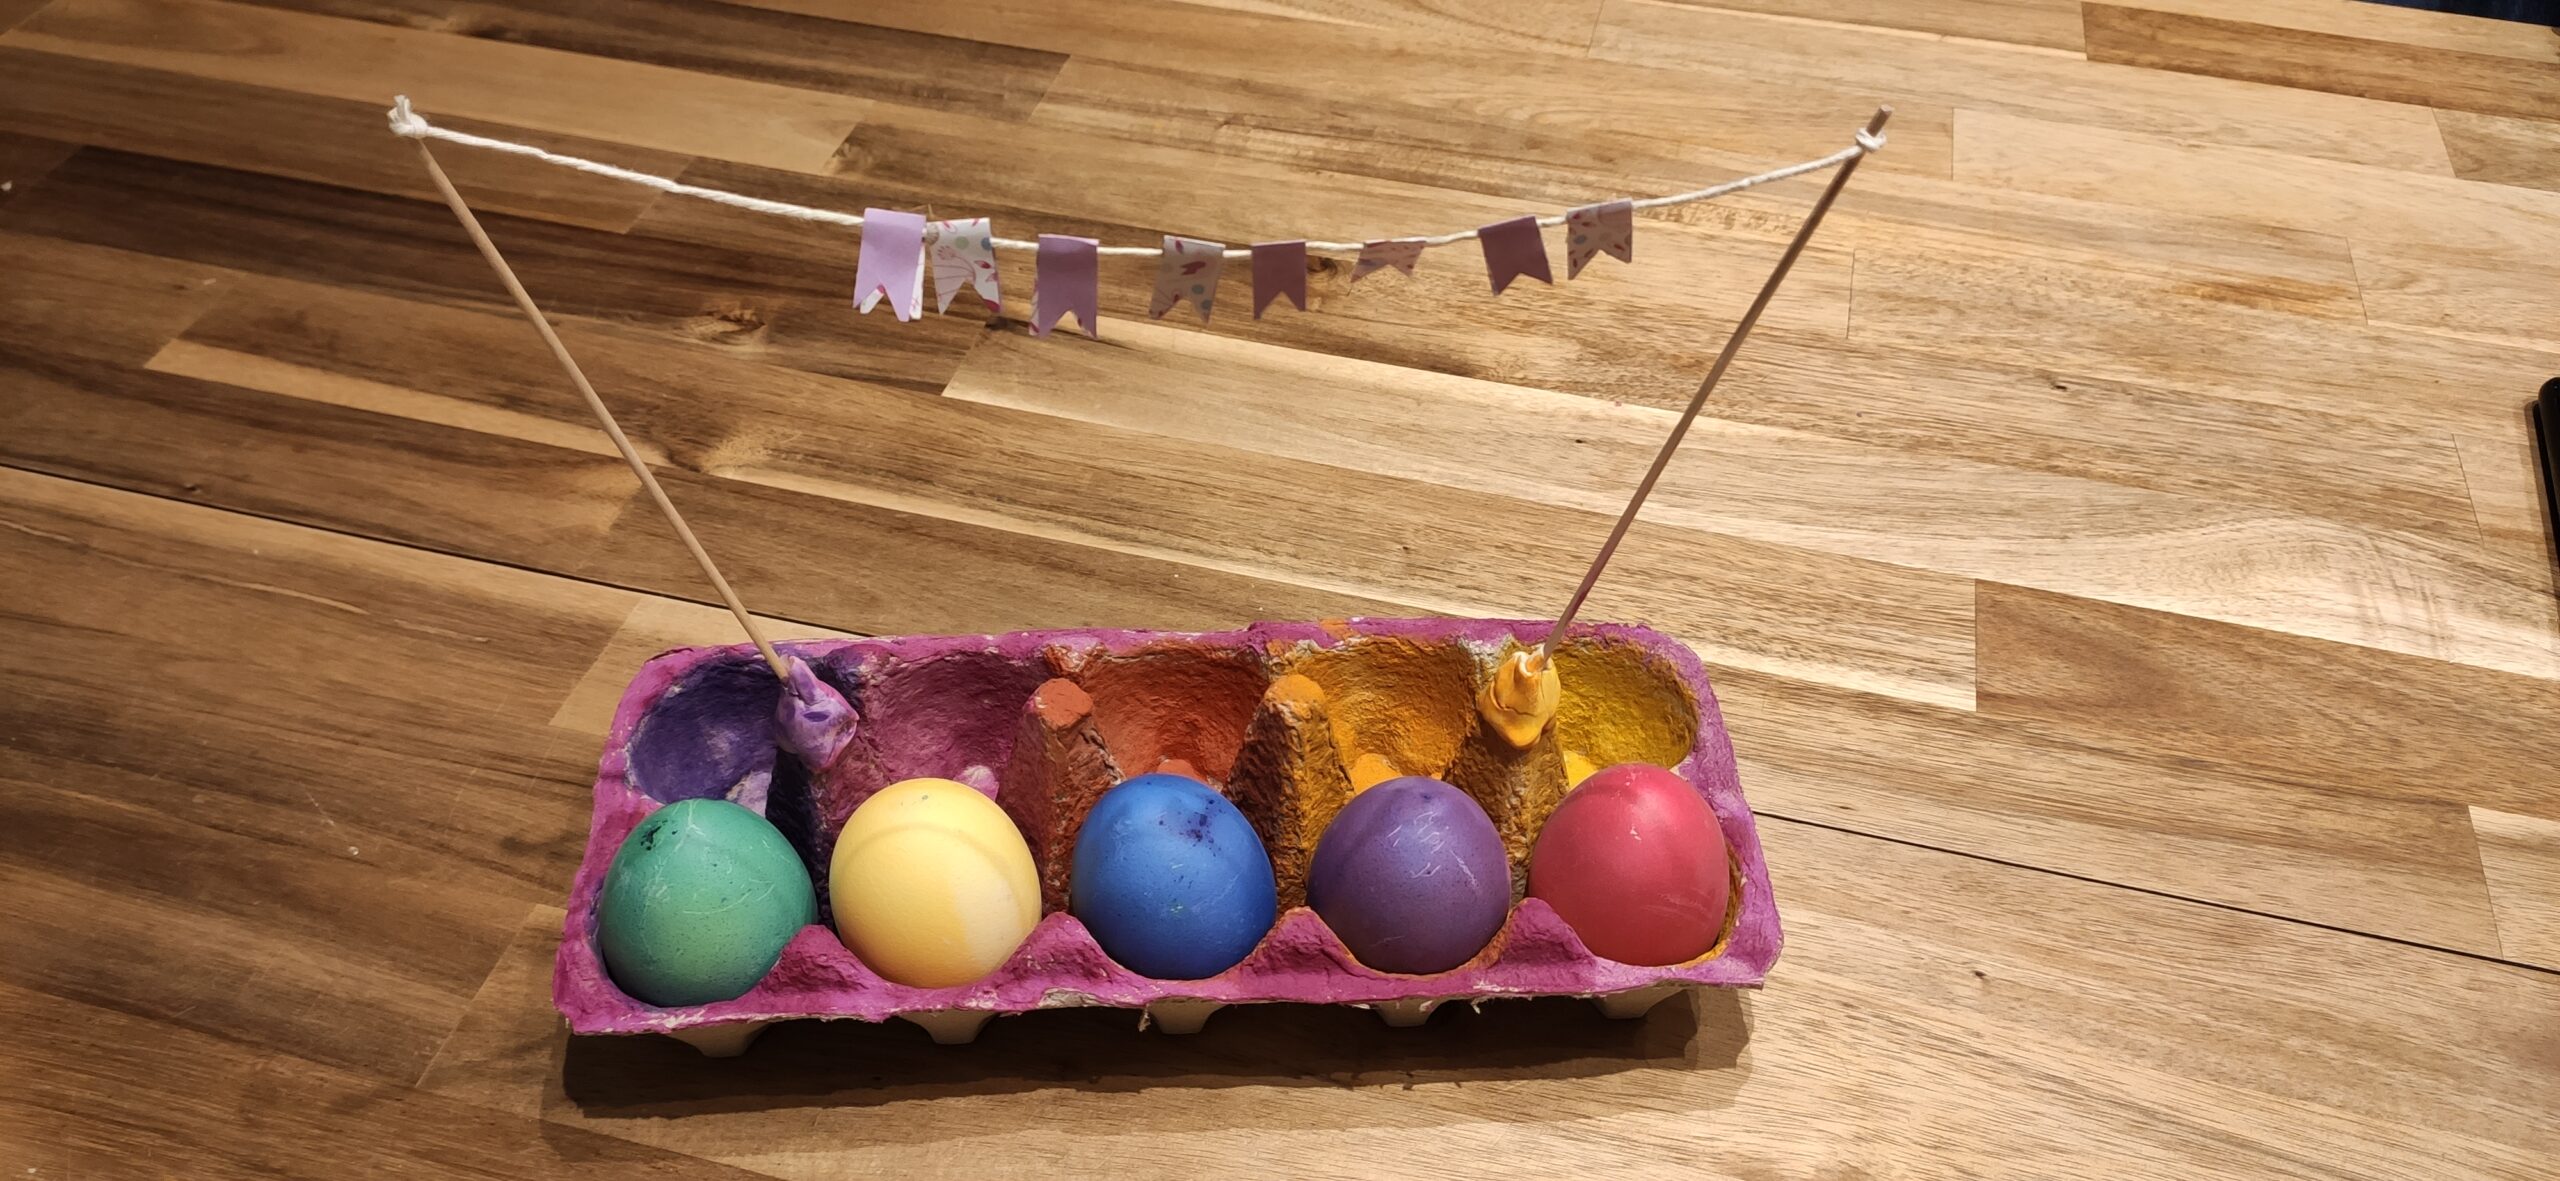 Bild zum Schritt 17 für das Bastel- und DIY-Abenteuer für Kinder: 'Abschließend dekoriert ihr den Eierkarton z.B. mit Moos und andere...'